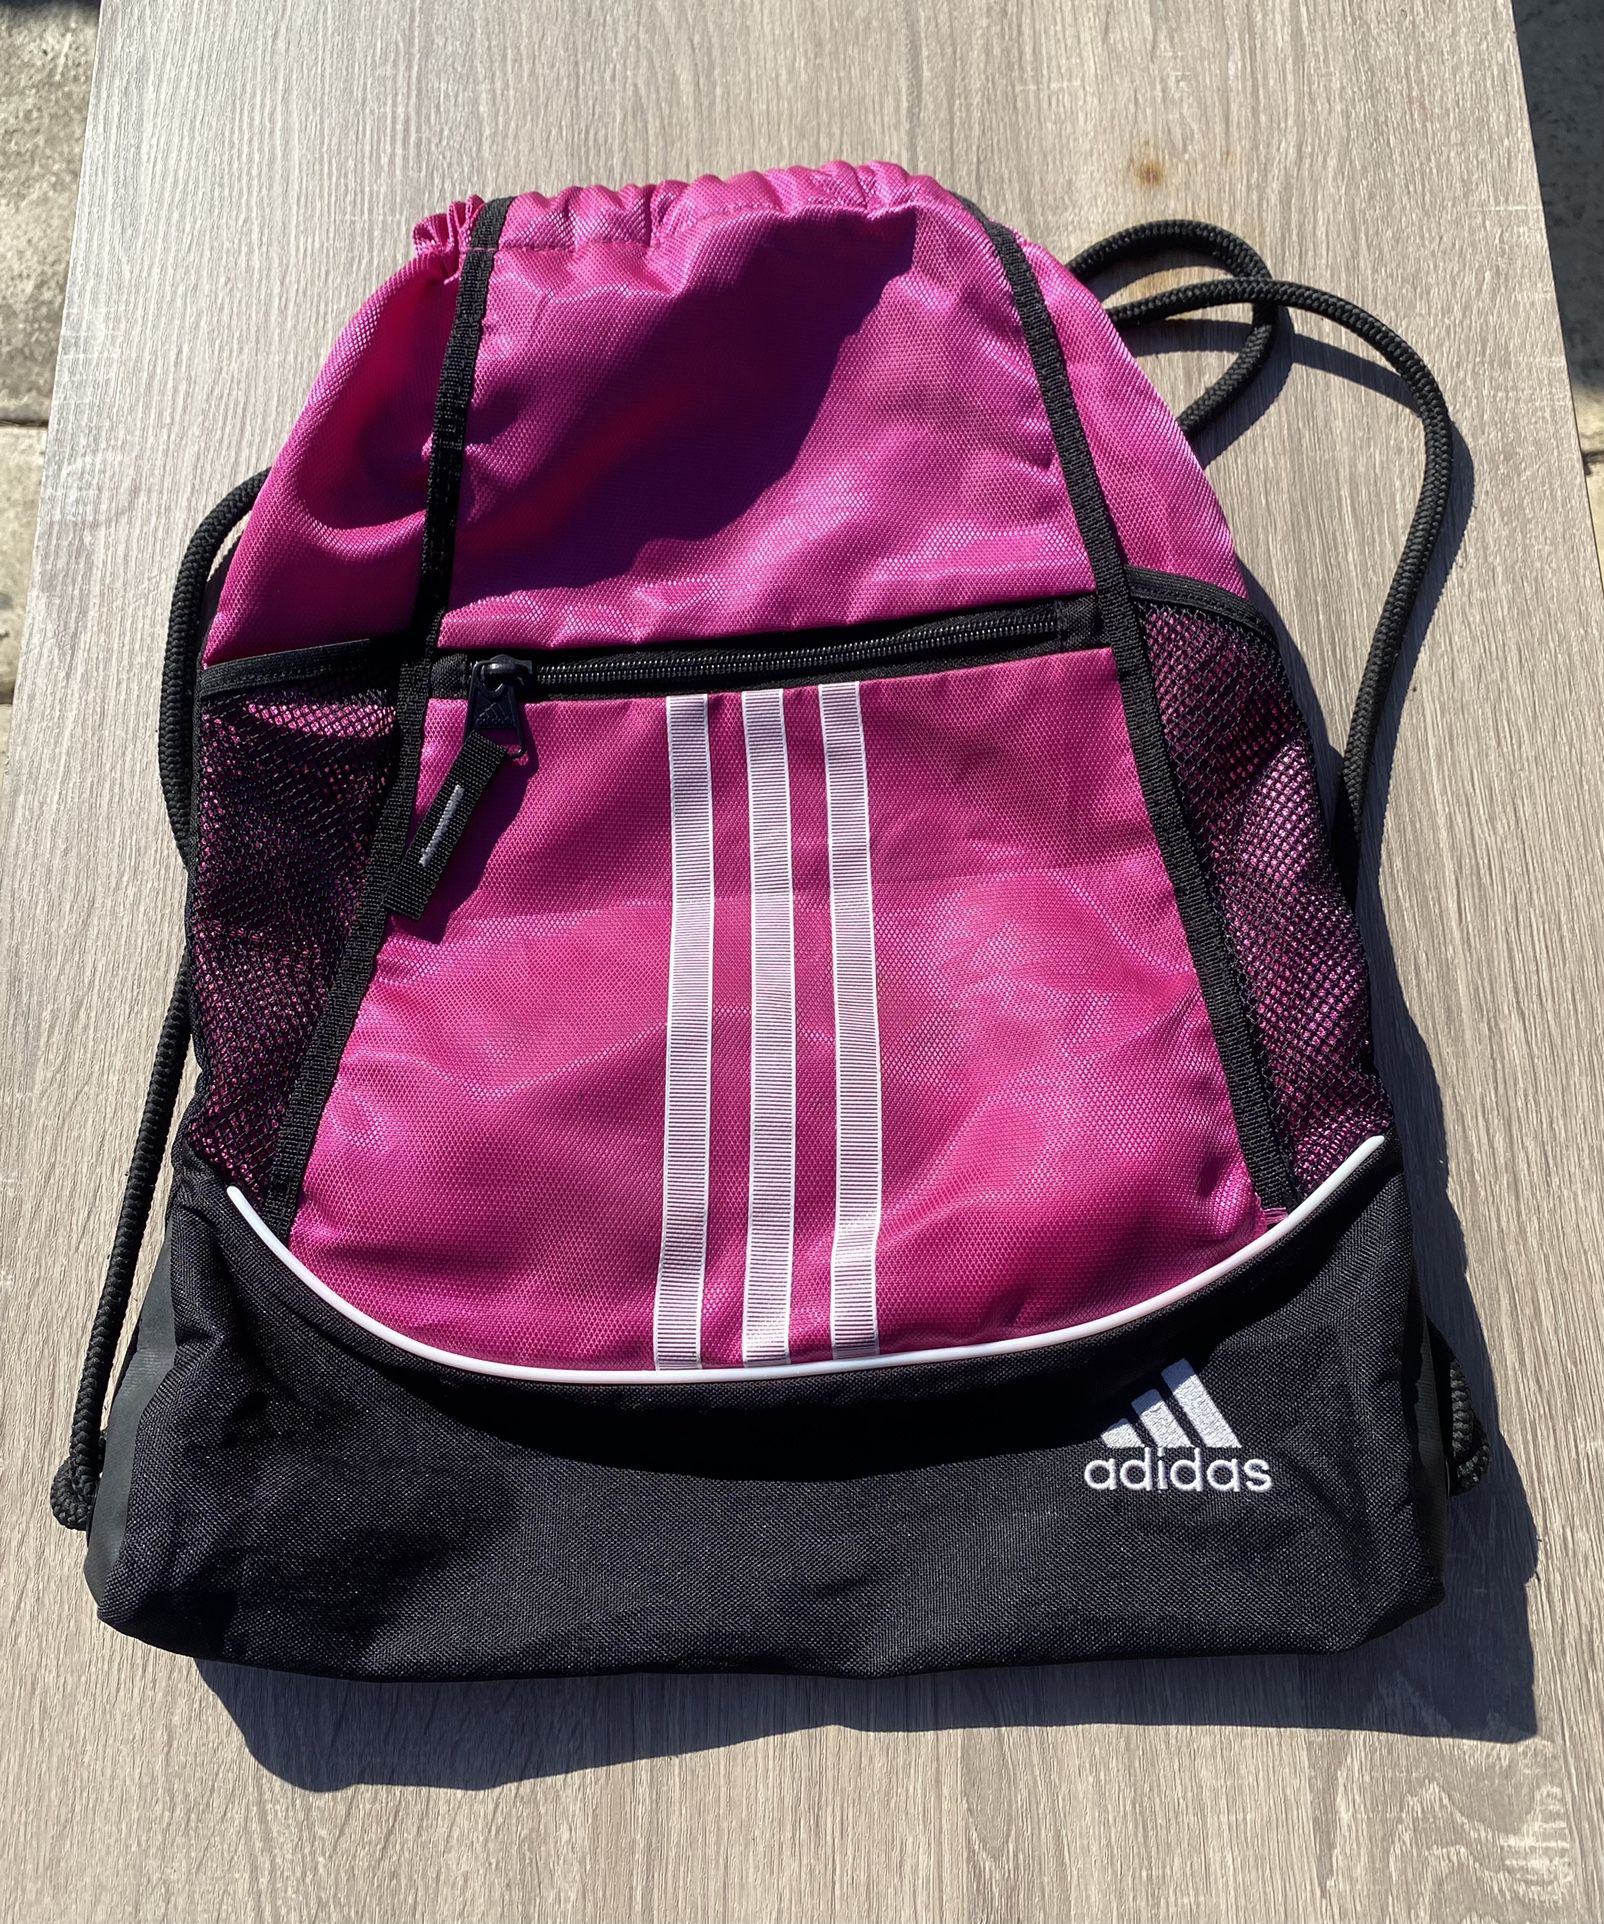 Adidas Magenta Pink Black White Gym Sack Bag 